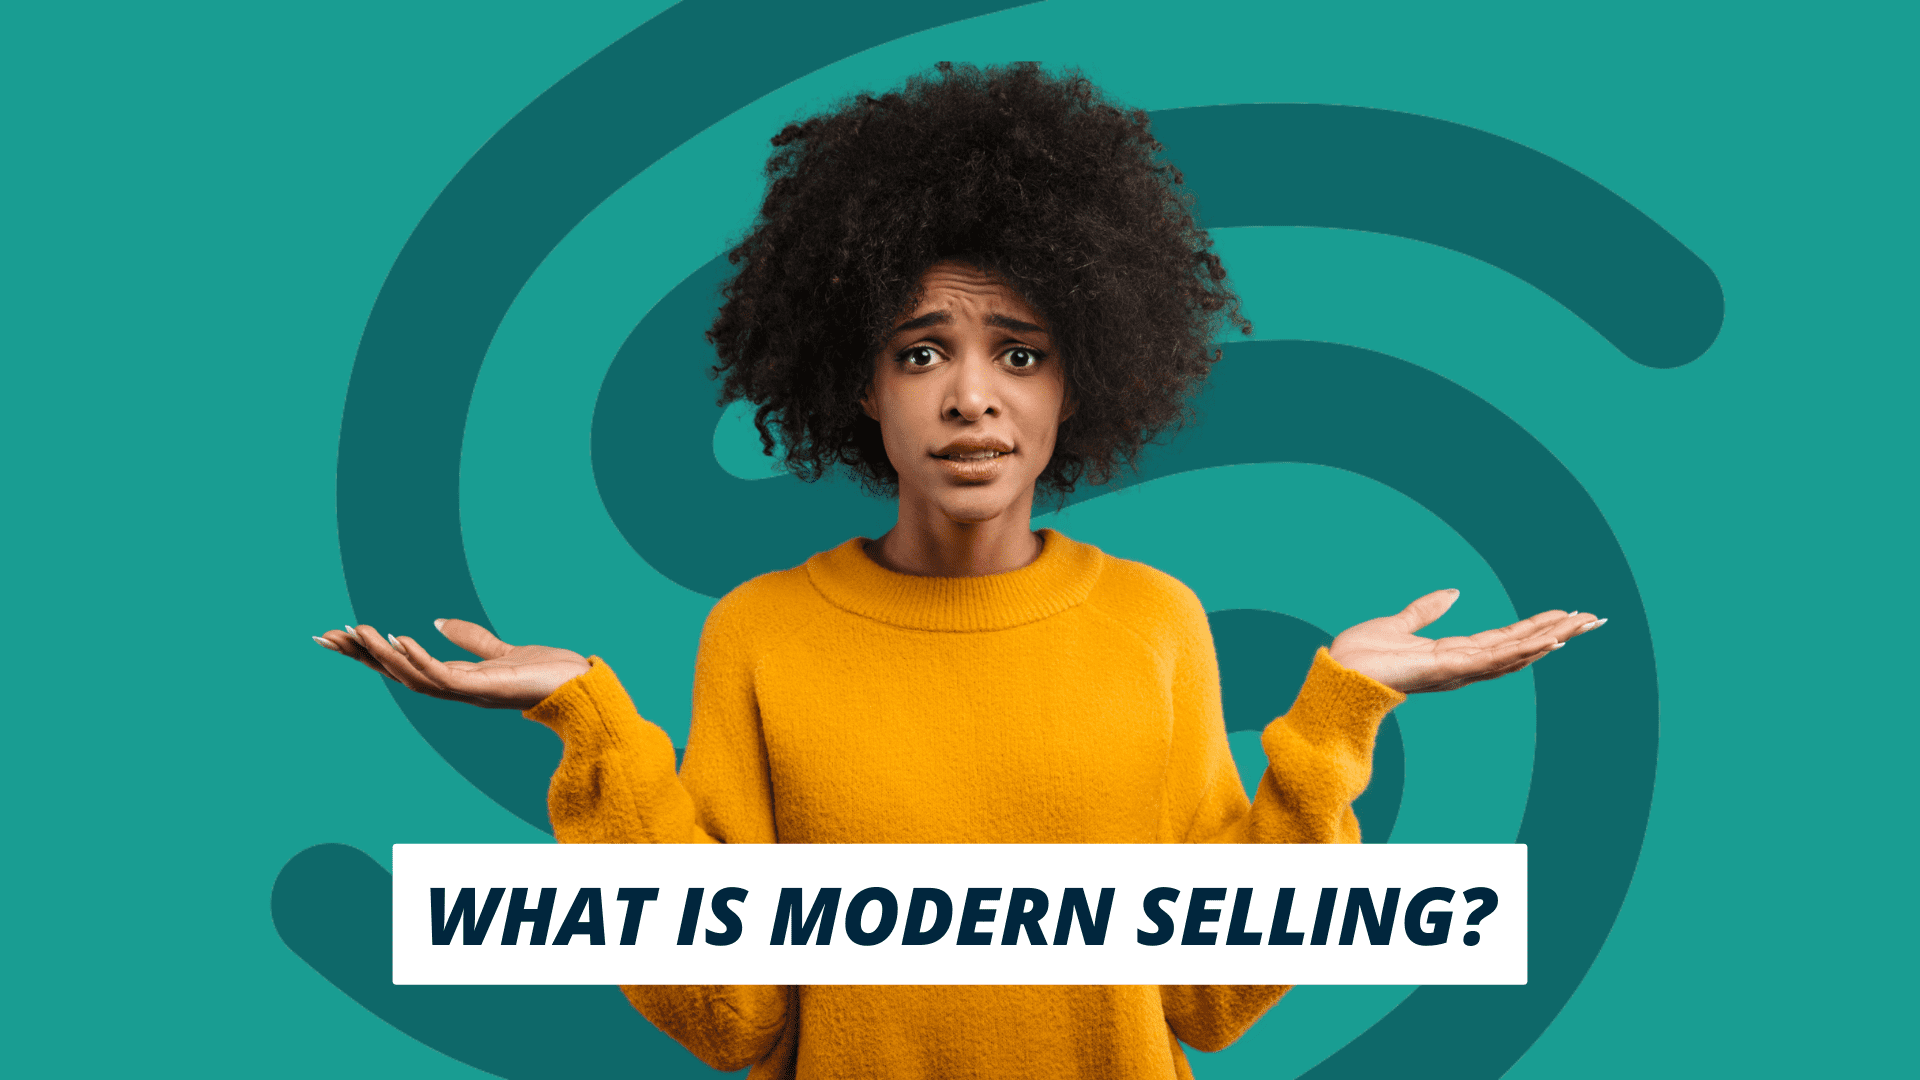 Qu'est-ce que le Modern selling ?